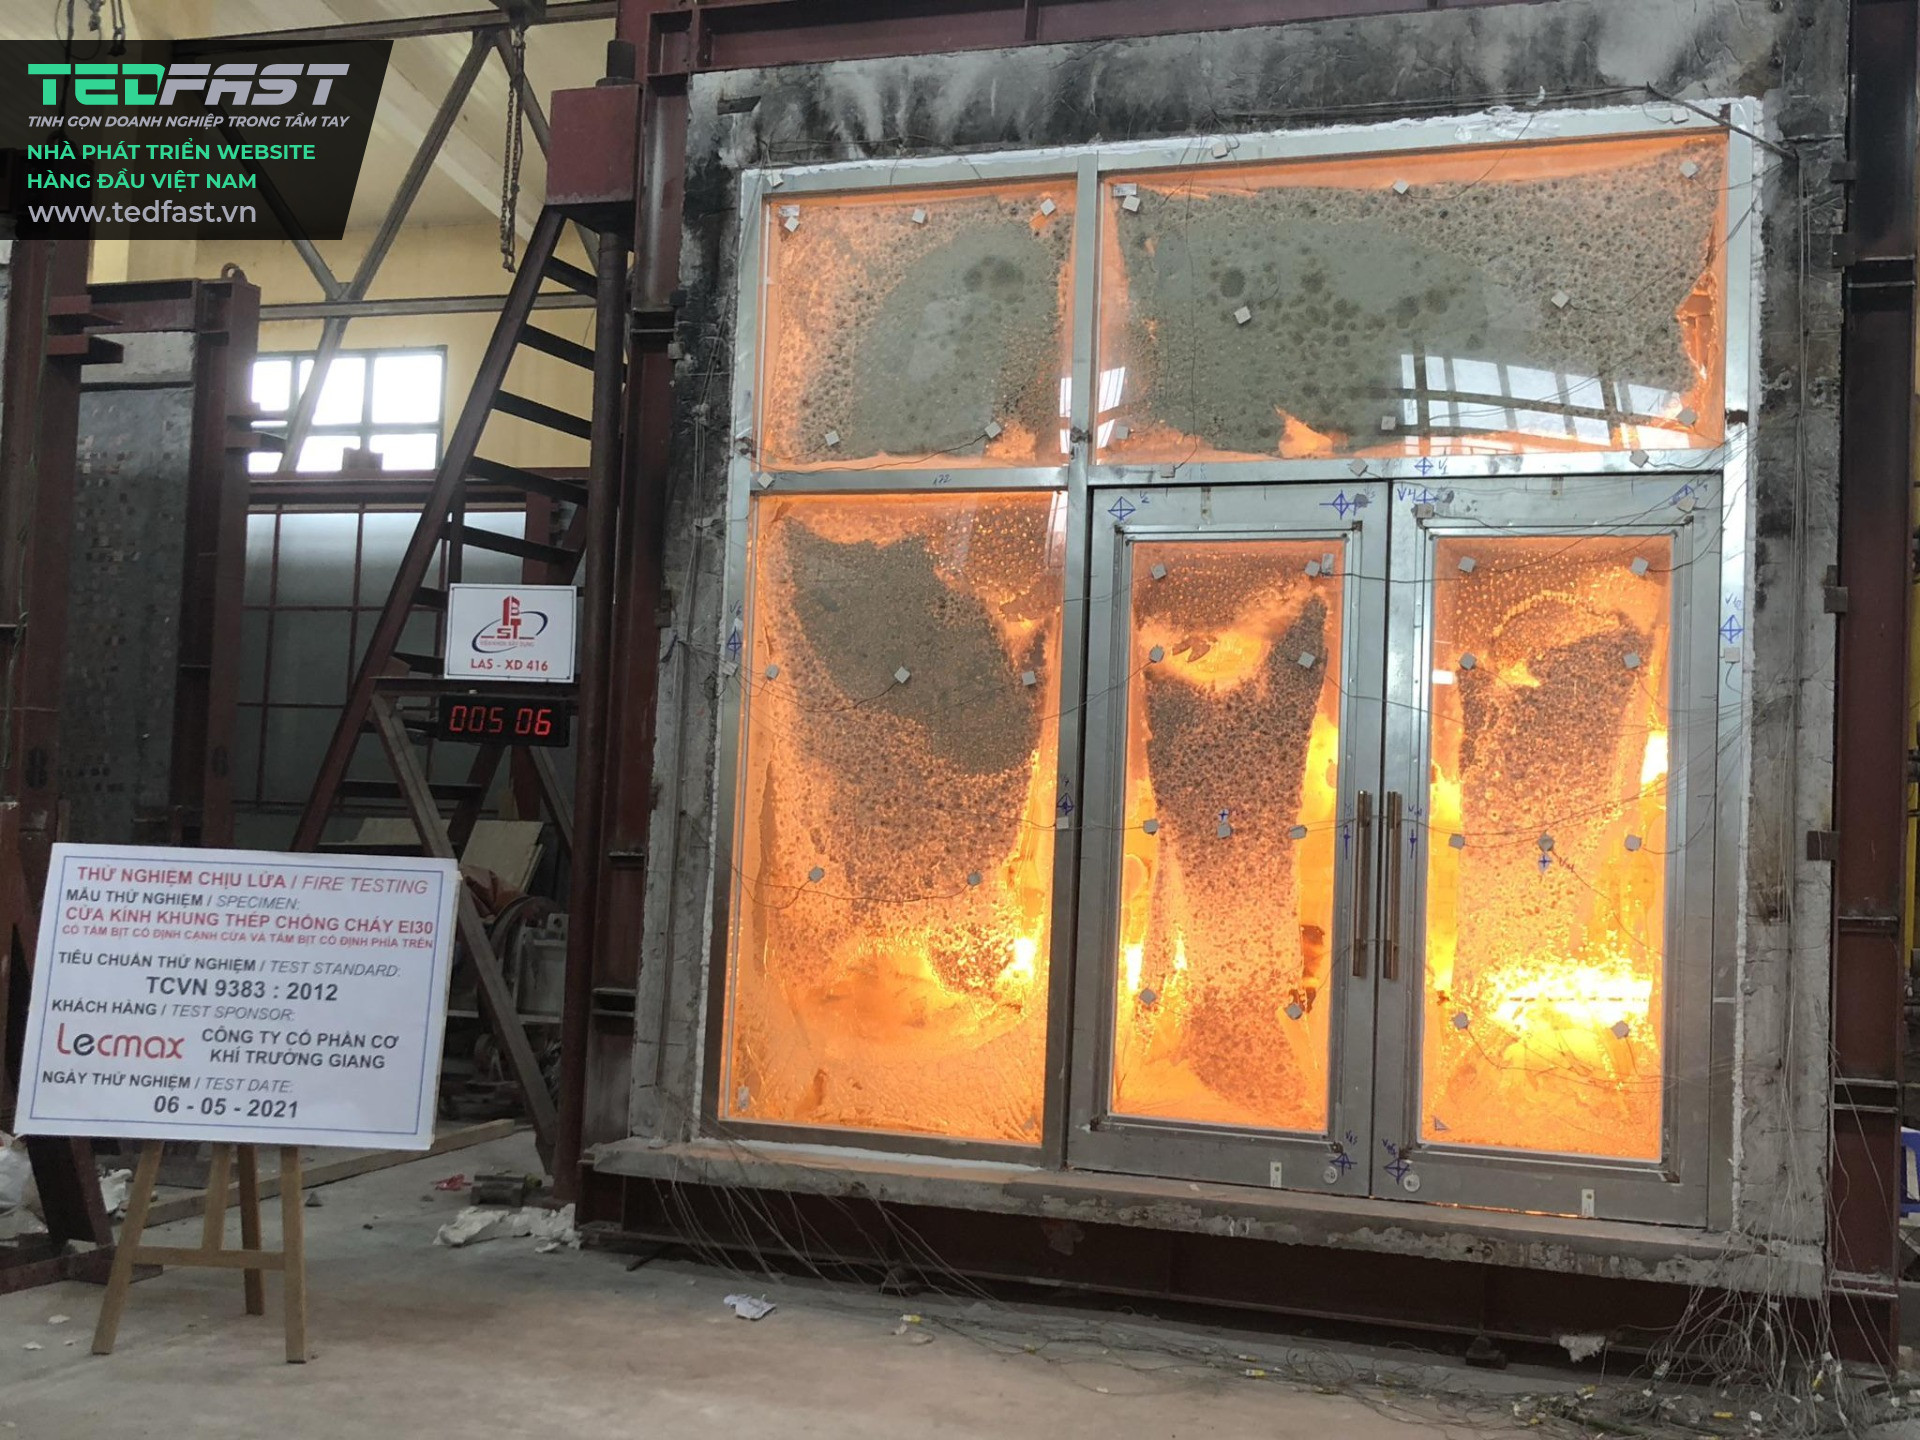 Giới thiệu dòng sản phẩm Kính Chống Cháy EI45 tham khảo dành cho Công ty gia công Kính chống cháy - Công ty cổ phần Eco Glass